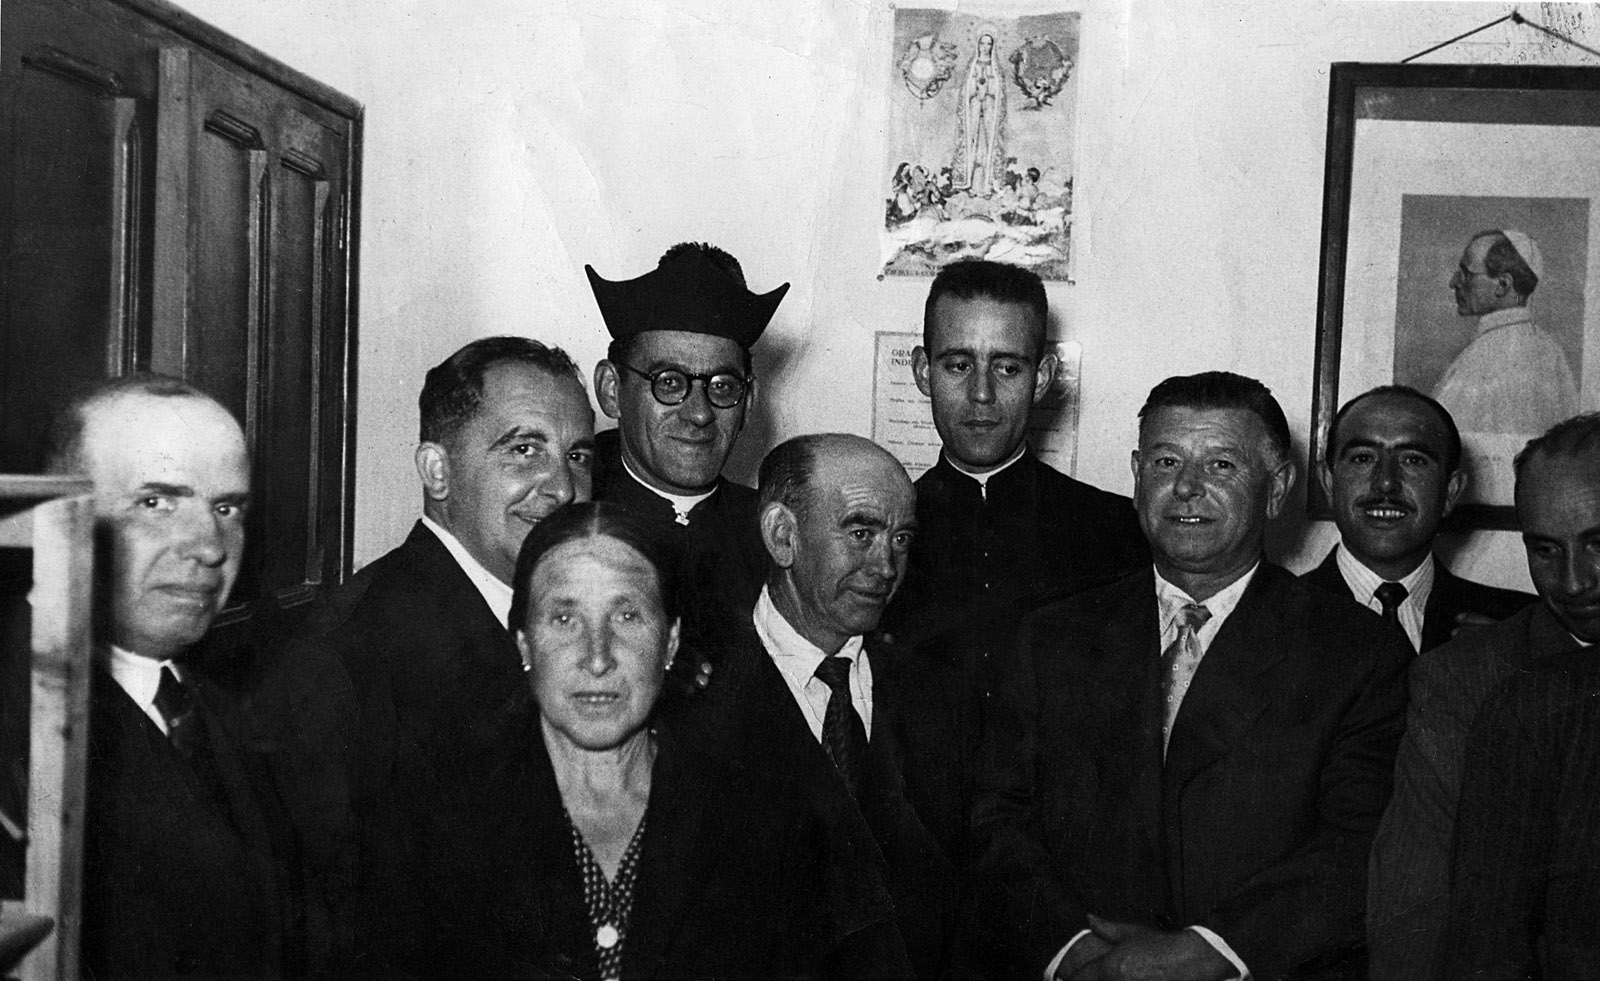 El párroco Luis Calleja con Mariano Cavero (coajutor), Teodoro, Julián Sepúlveda y Alberto Hervás, entre otros, con el retrato al fondo del Papa Pío XII en 1952.